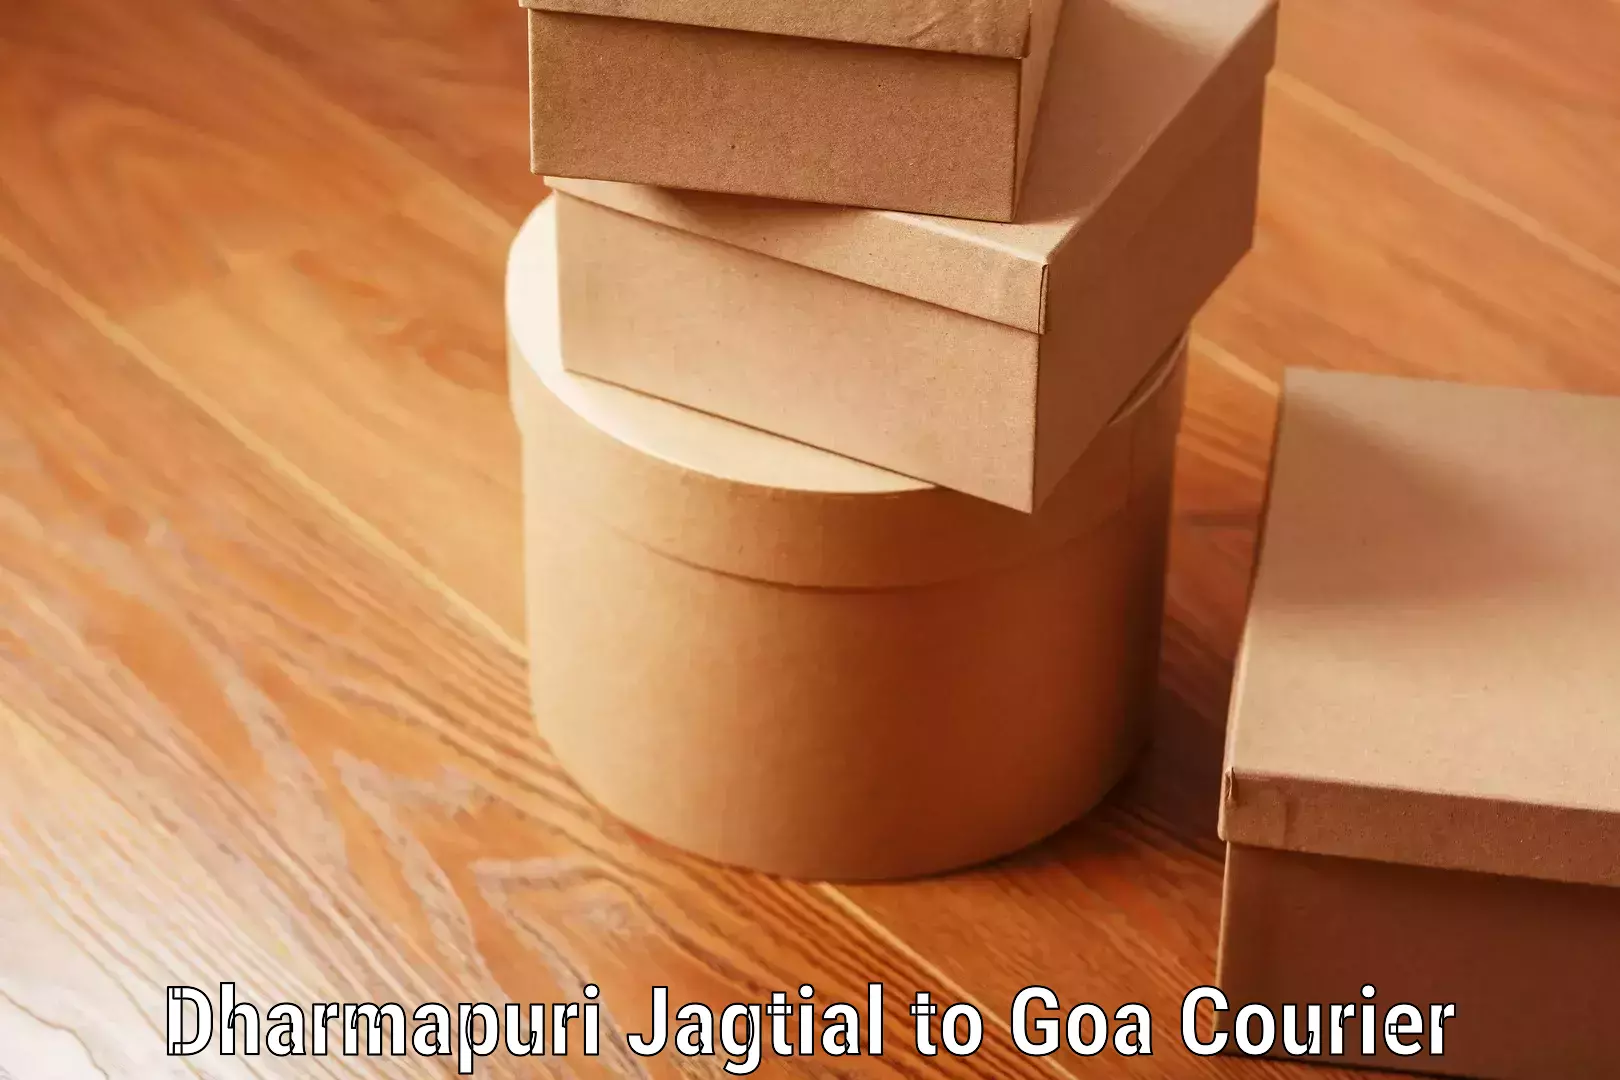 Baggage handling services in Dharmapuri Jagtial to NIT Goa